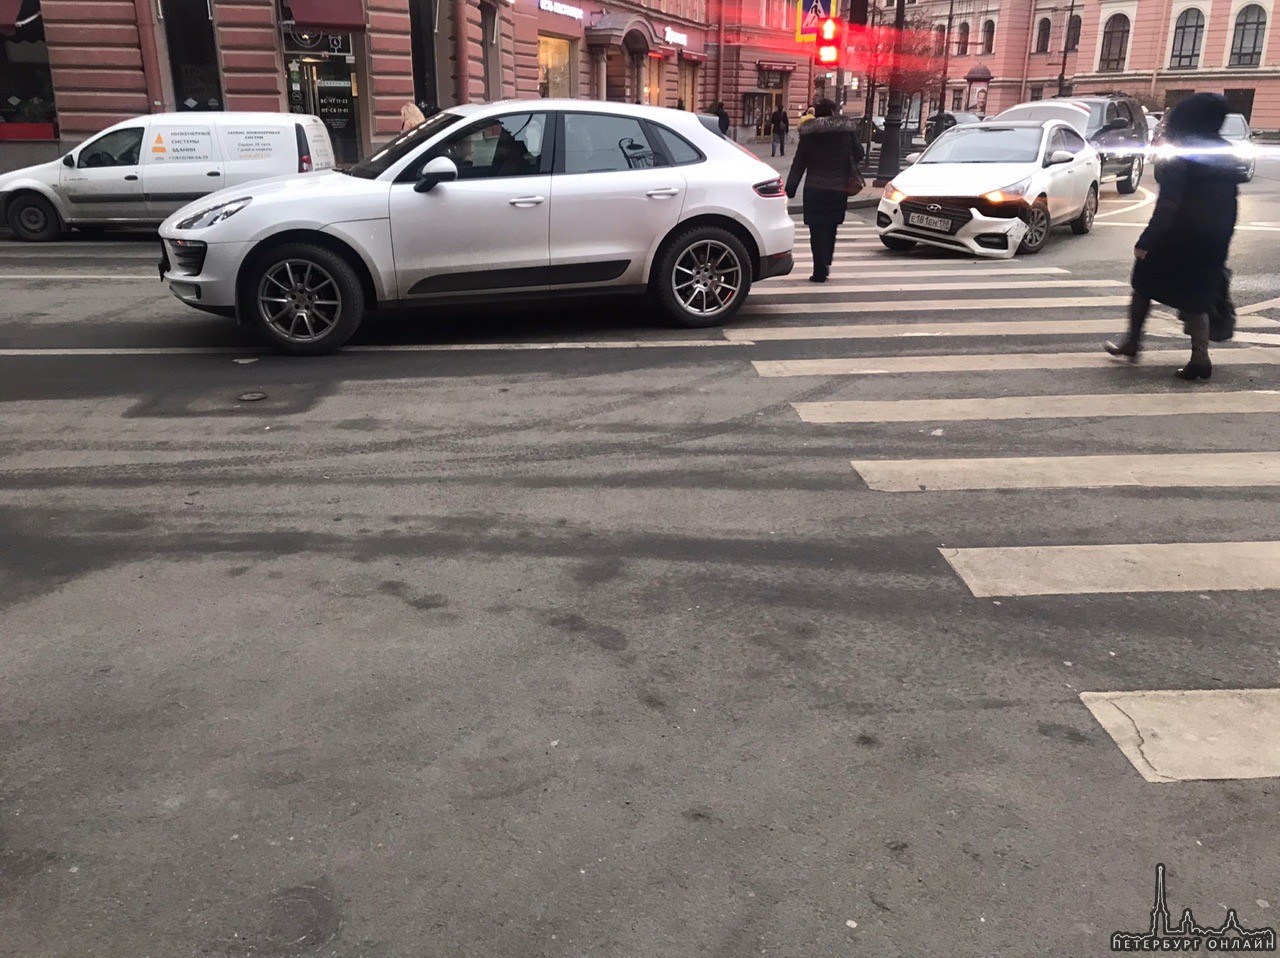 Петроградская сторона. На улице Льва Толстого не смогли разъехаться Porsche и Hyundai. Ох уж этот по...